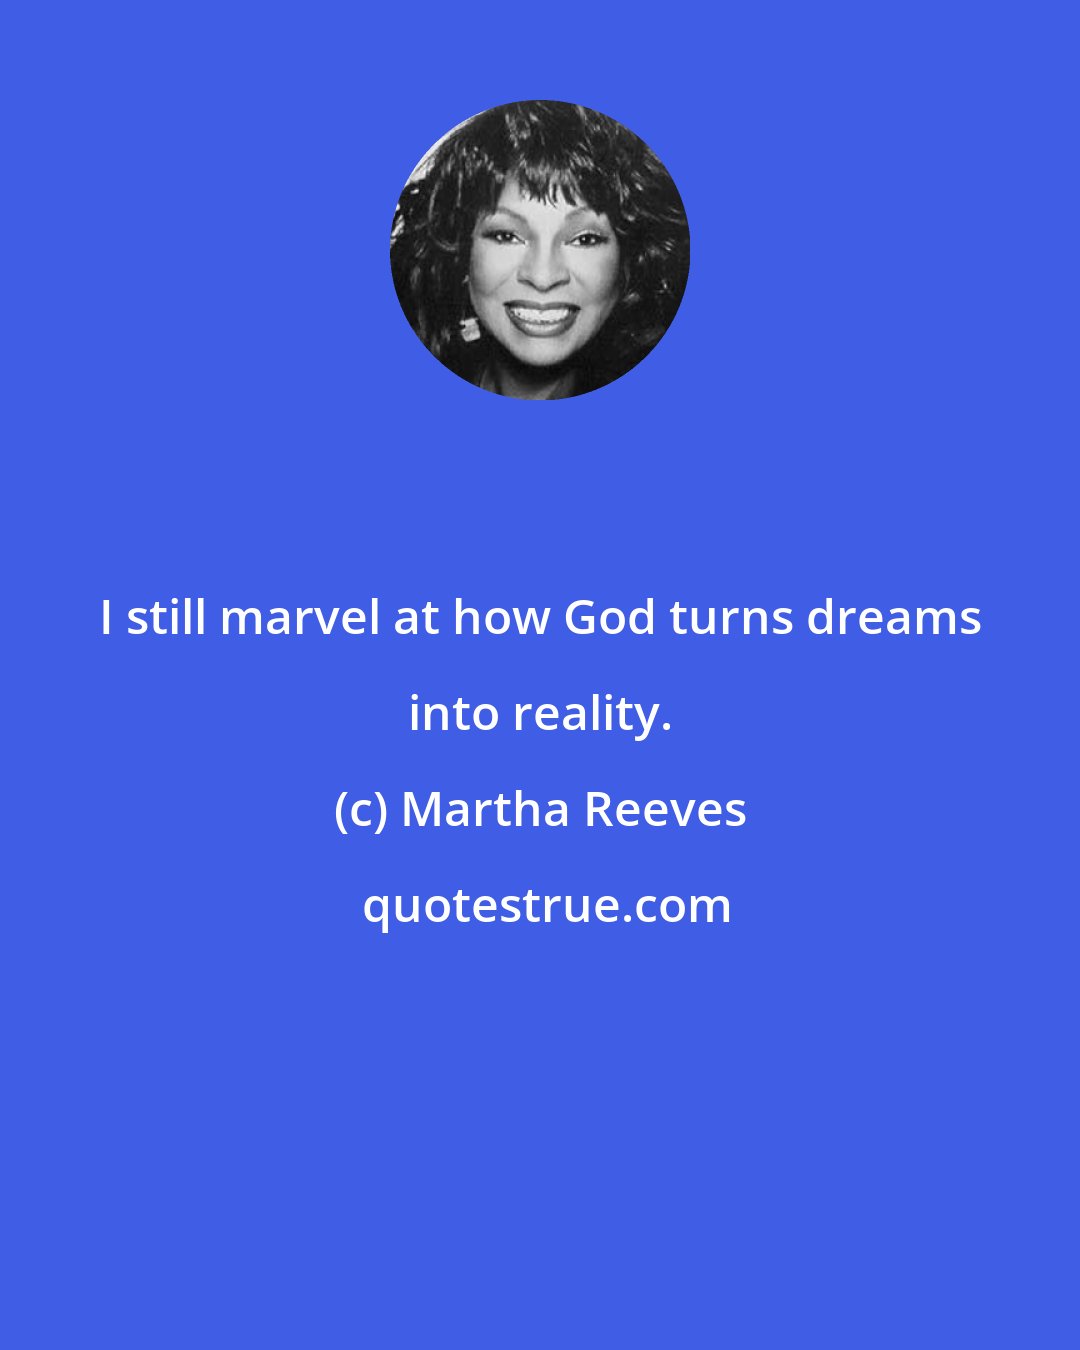 Martha Reeves: I still marvel at how God turns dreams into reality.